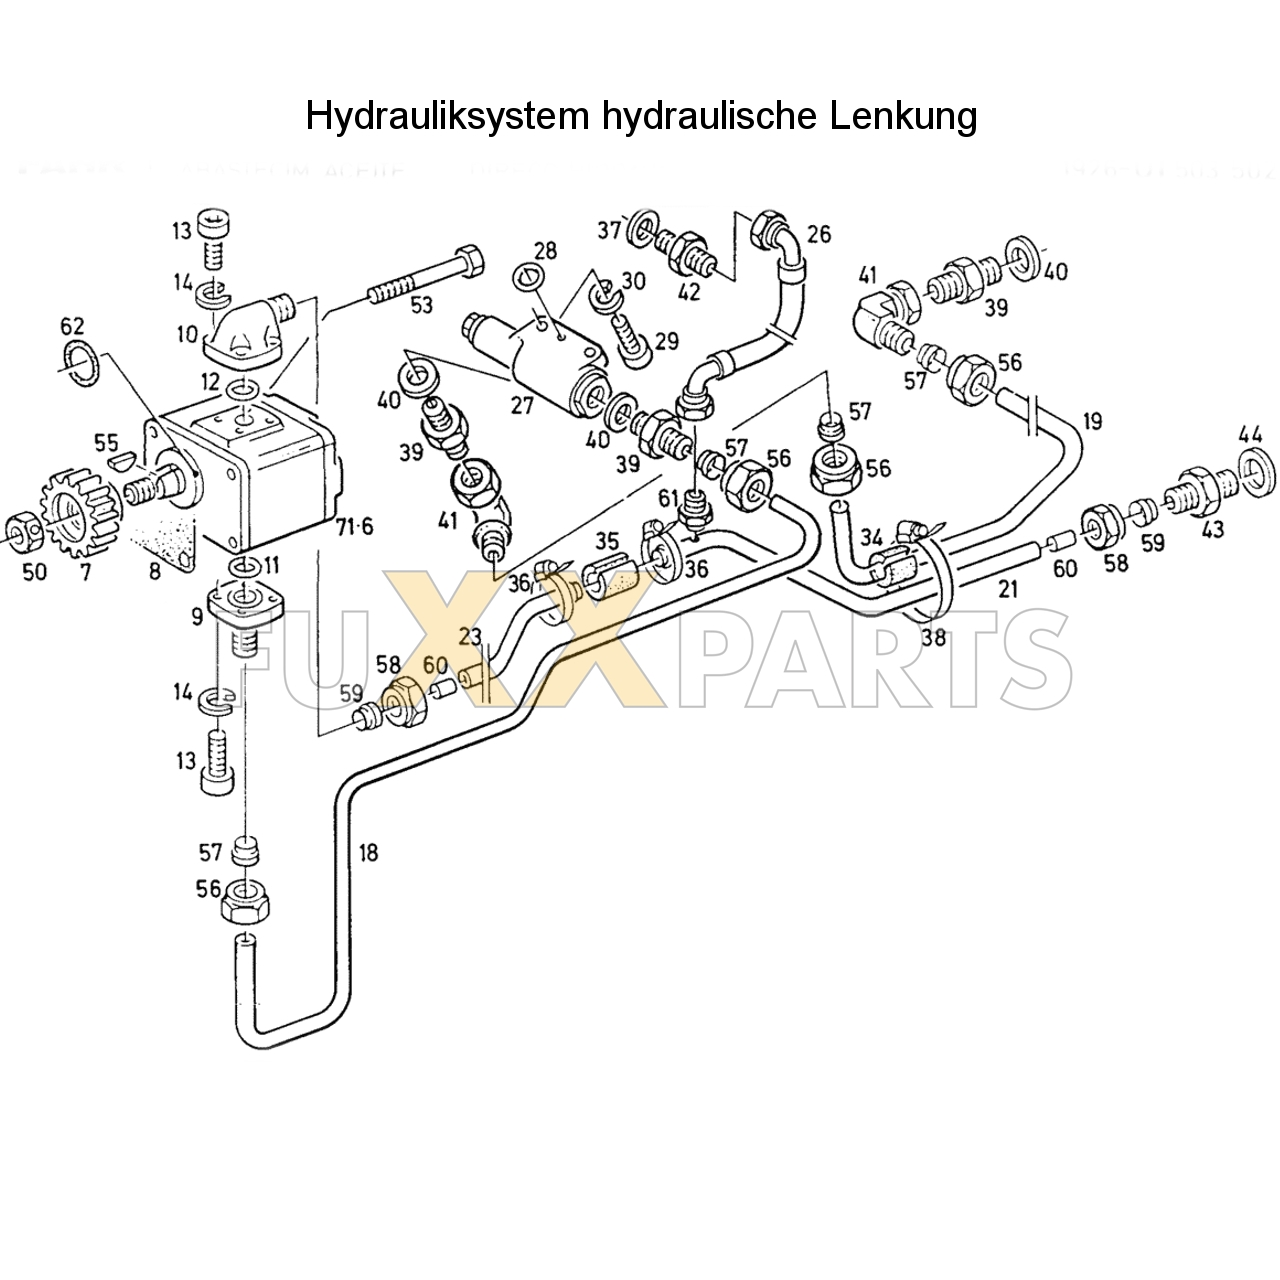 D 6207 Hydrauliksystem hyd. Lenkung